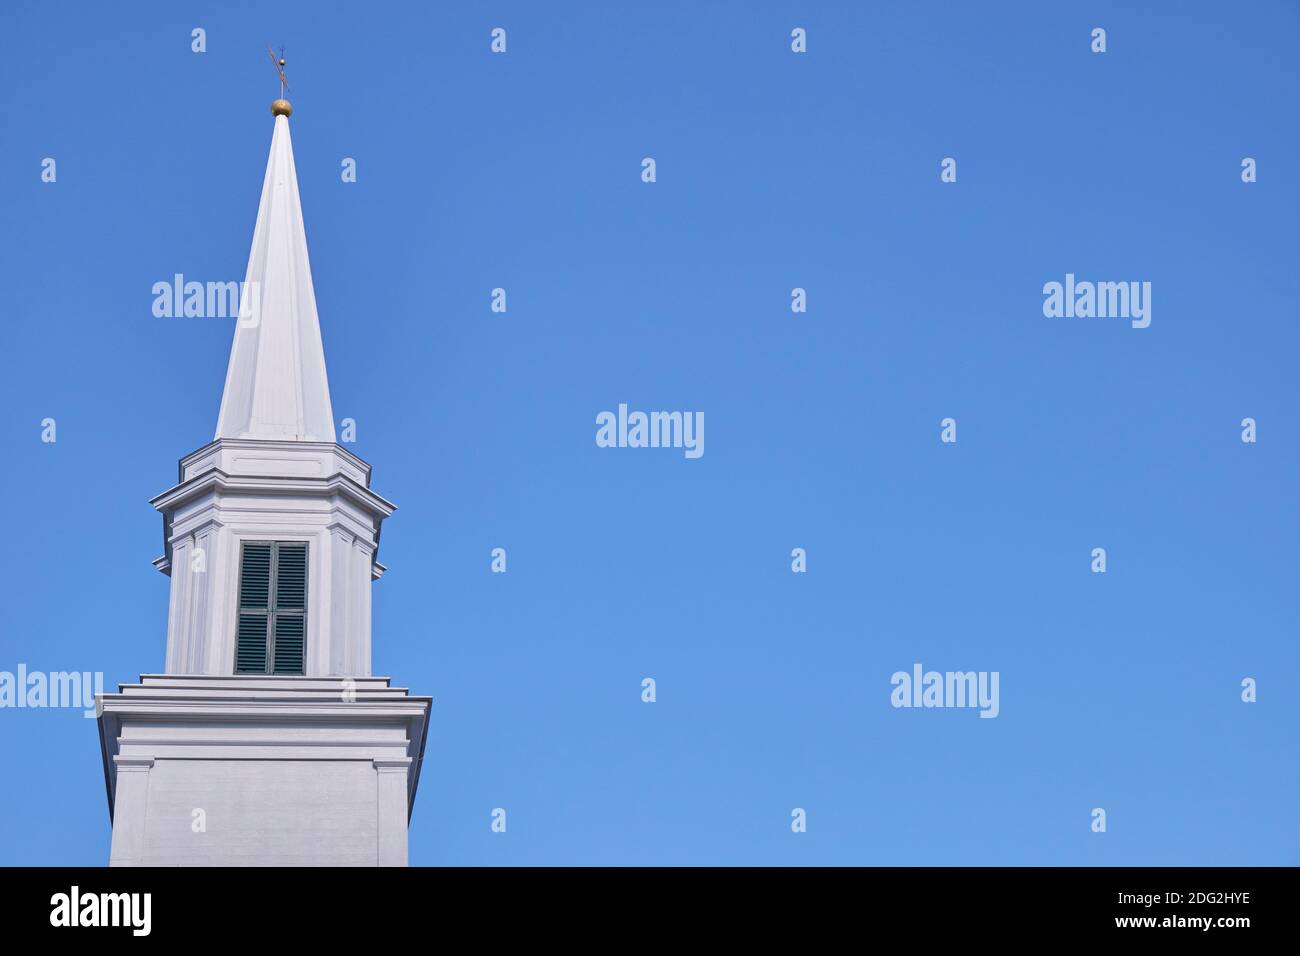 La wihte, clocher en bois de la première église congrégationale de Blue Hill. À Blue Hill, Maine. Bleu ciel et espace négatif bon pour le texte. Banque D'Images